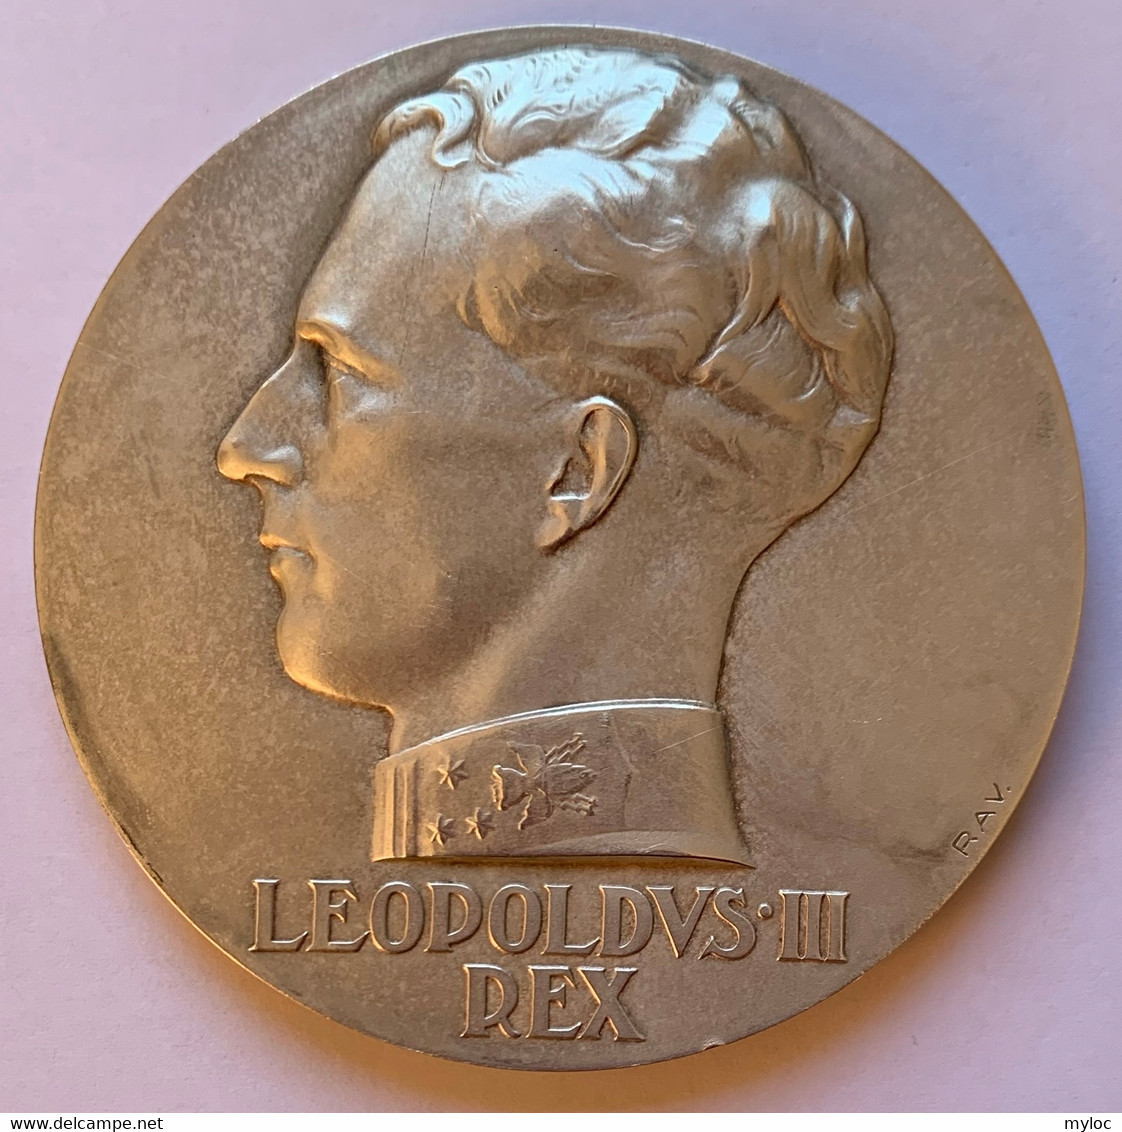 Médaille Bronze Argenté. Ecole De Musique Saint-Gilles-Lez-Bruxelles. Déclamation Henny Weissbort 1938. Léopold III Rex - Unternehmen